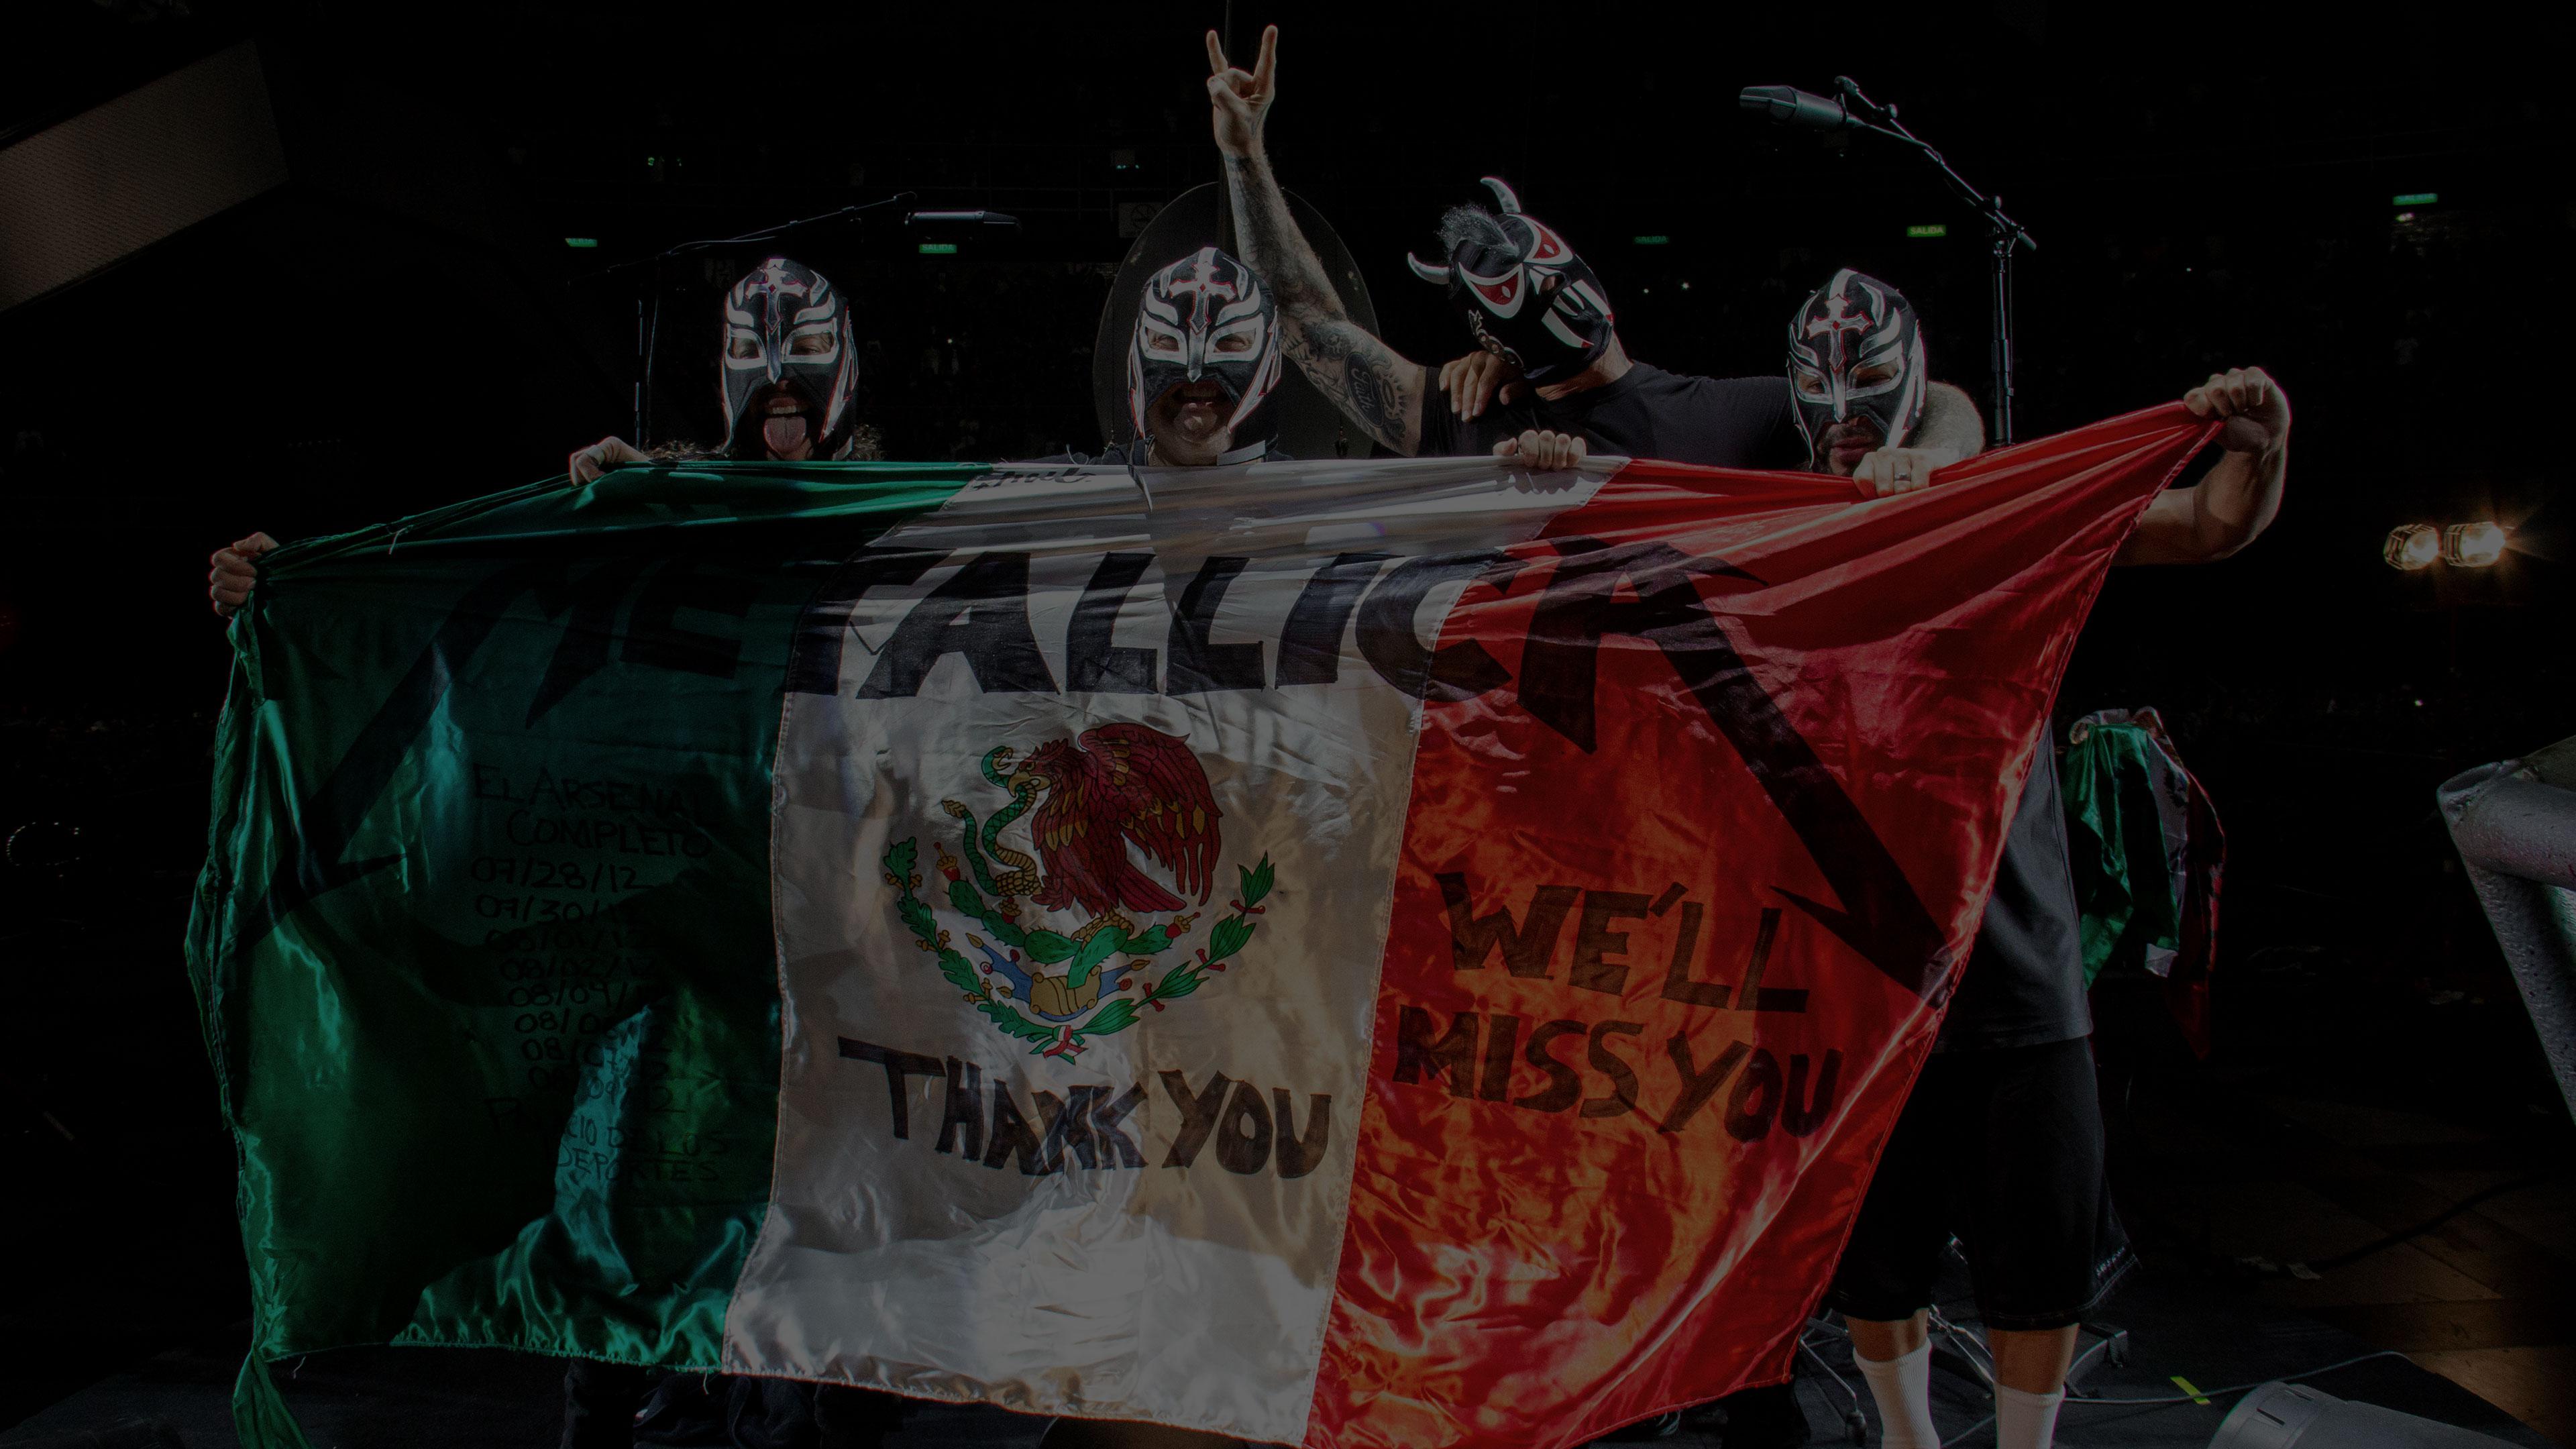 Metallica at Palacio de los Deportes in Mexico City, Mexico on August 9, 2012